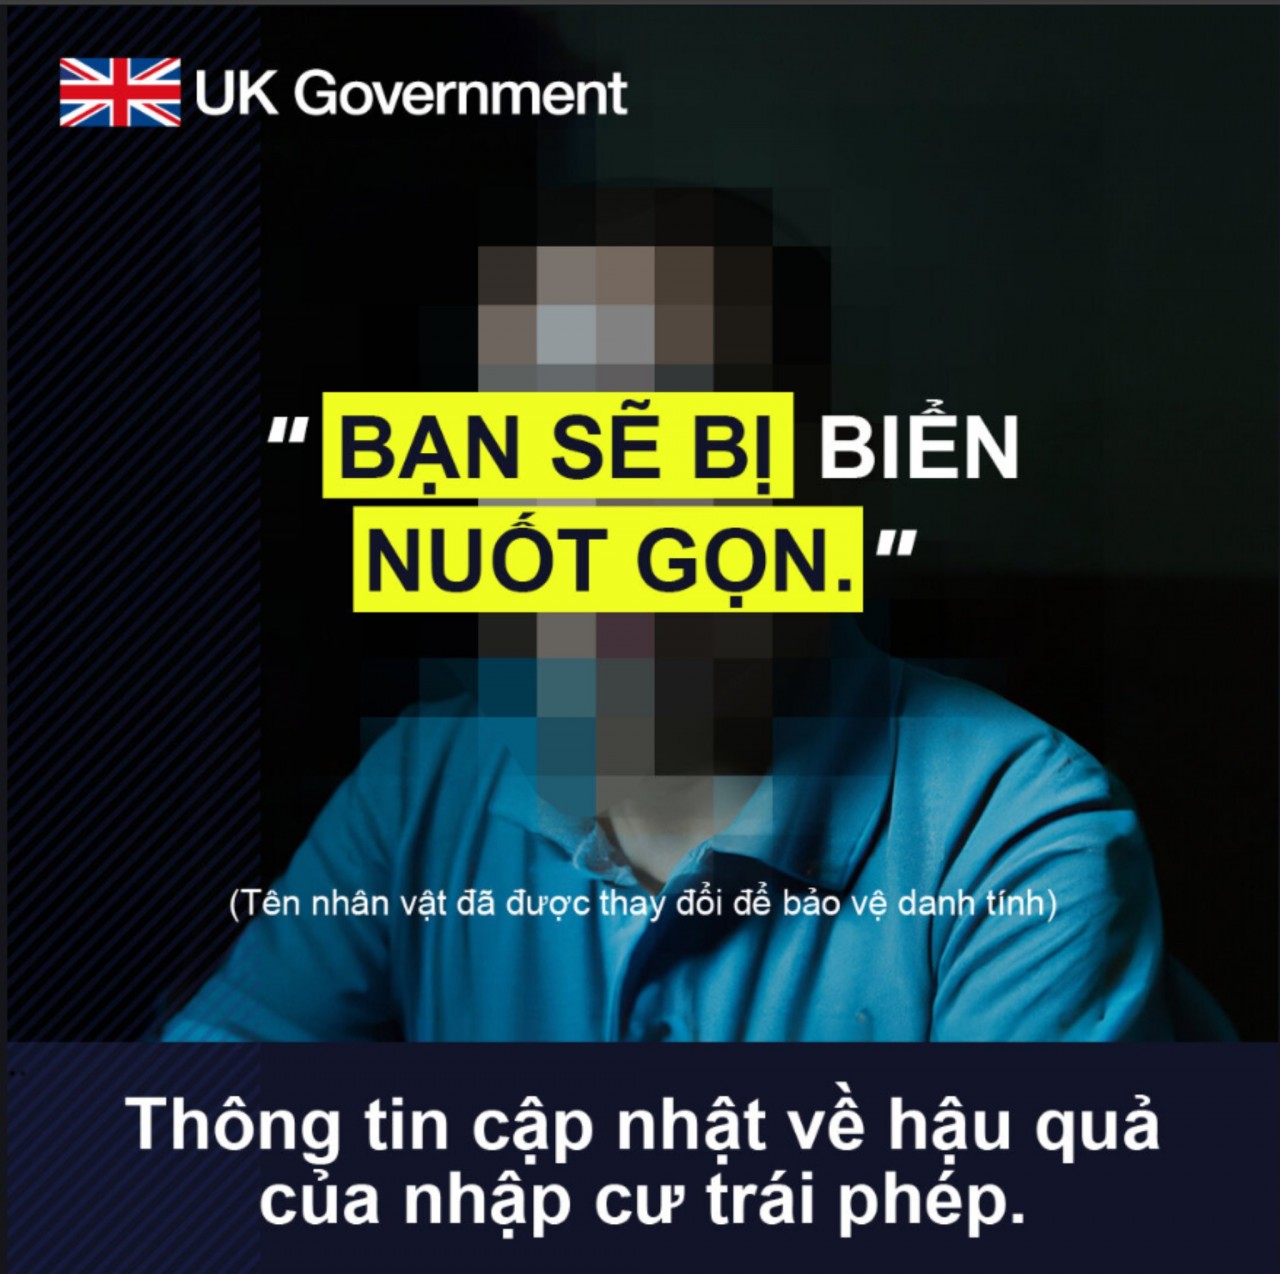 Chiến dịch này nhằm tuyên truyền cho người di cư về hậu quả của nhập cư trái phép vào Anh và ngăn chặn các chiêu trò của các nhóm tội phạm mua bán người. (Nguồn: Bộ Nội vụ Anh)